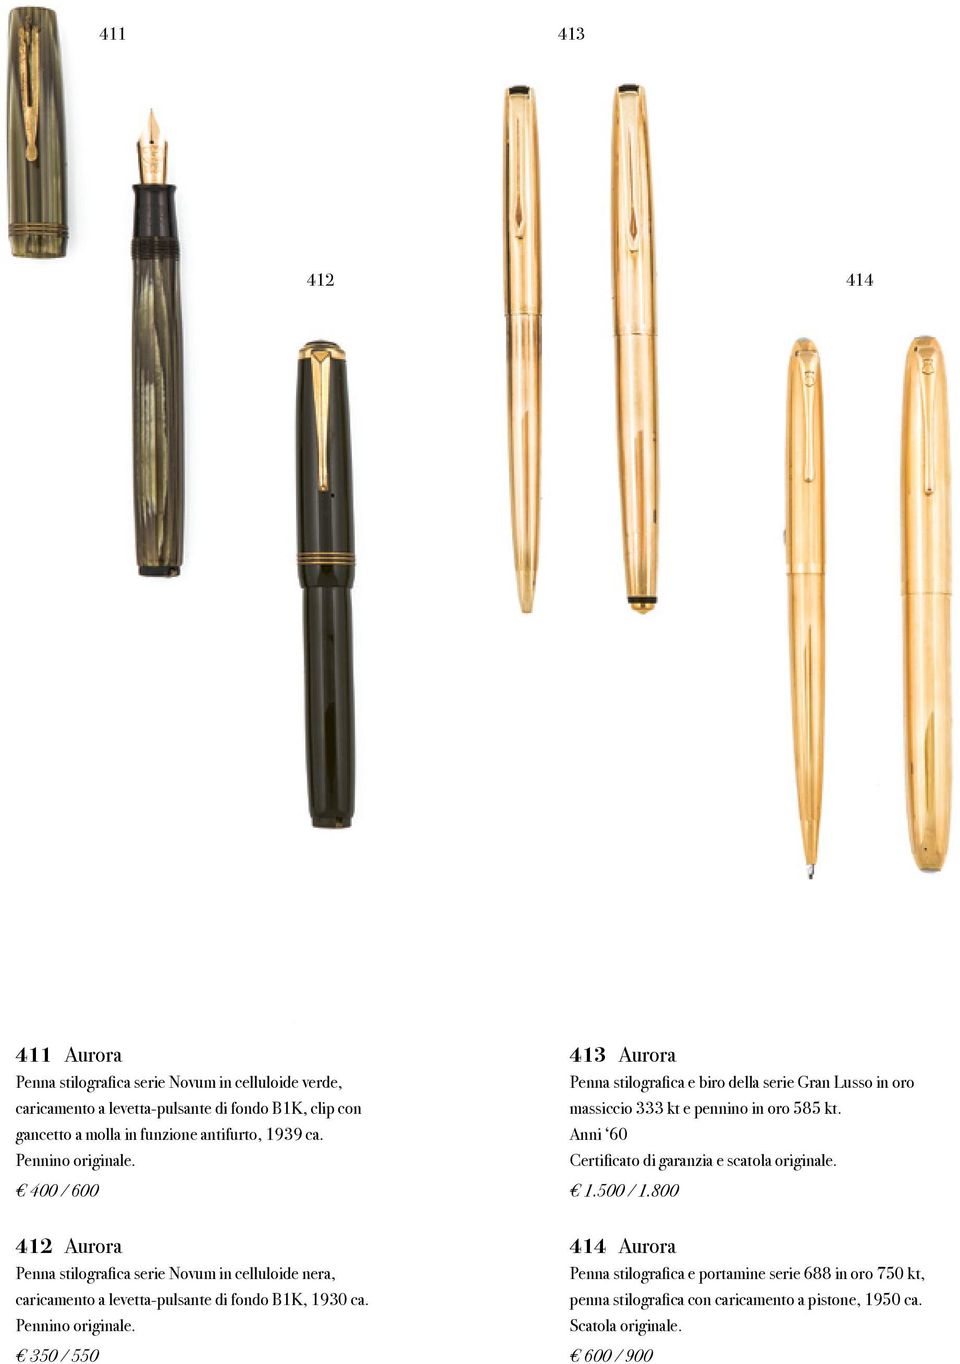 Pennino originale. 350 / 550 413 Aurora Penna stilografica e biro della serie Gran Lusso in oro massiccio 333 kt e pennino in oro 585 kt.